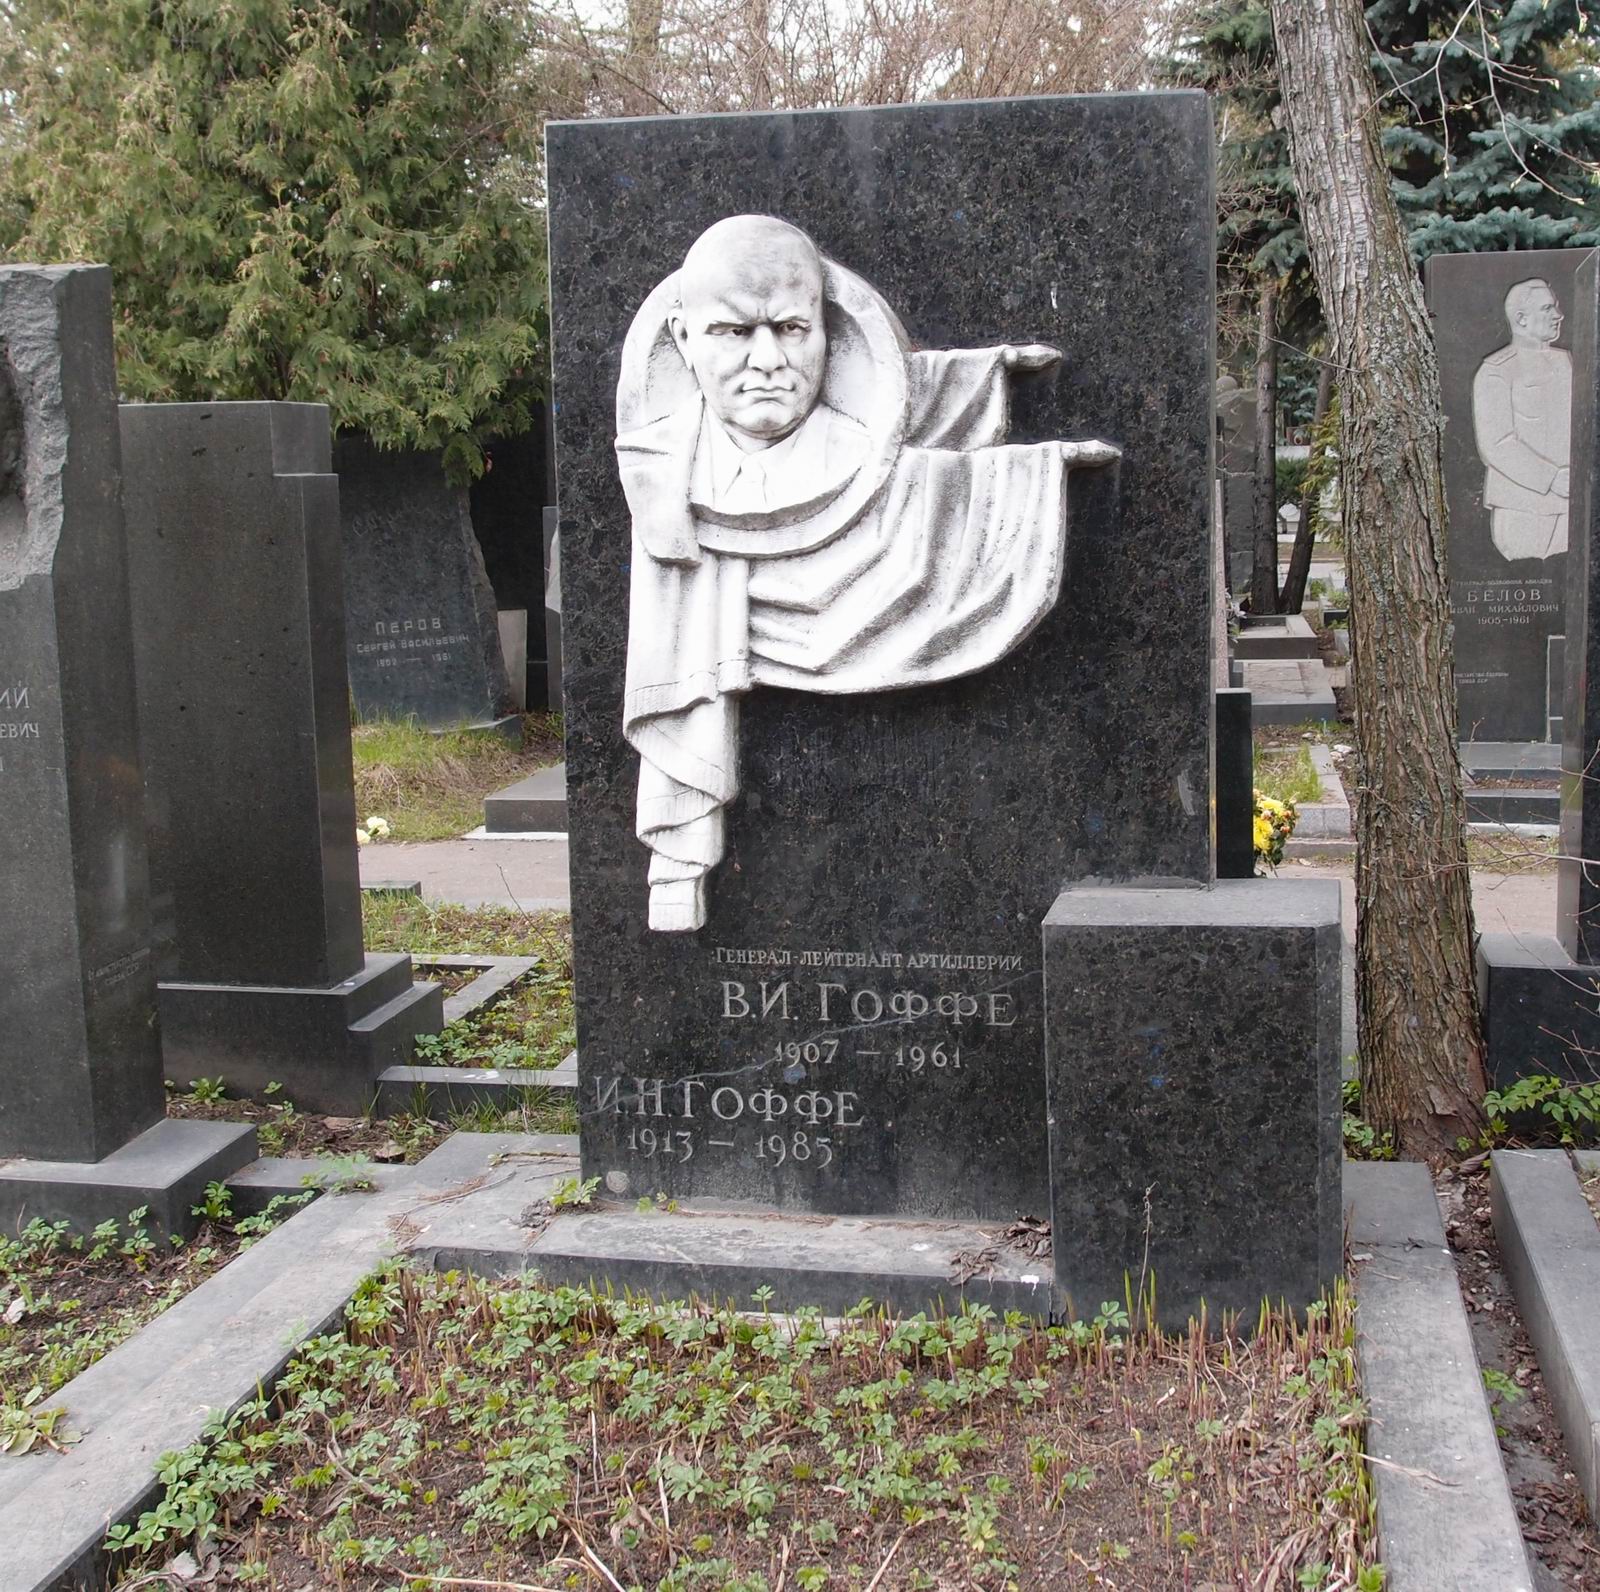 Памятник на могиле Гоффе В.И. (1907-1961), на Новодевичьем кладбище (8-12-3). Нажмите левую кнопку мыши чтобы увидеть фрагмент памятника.